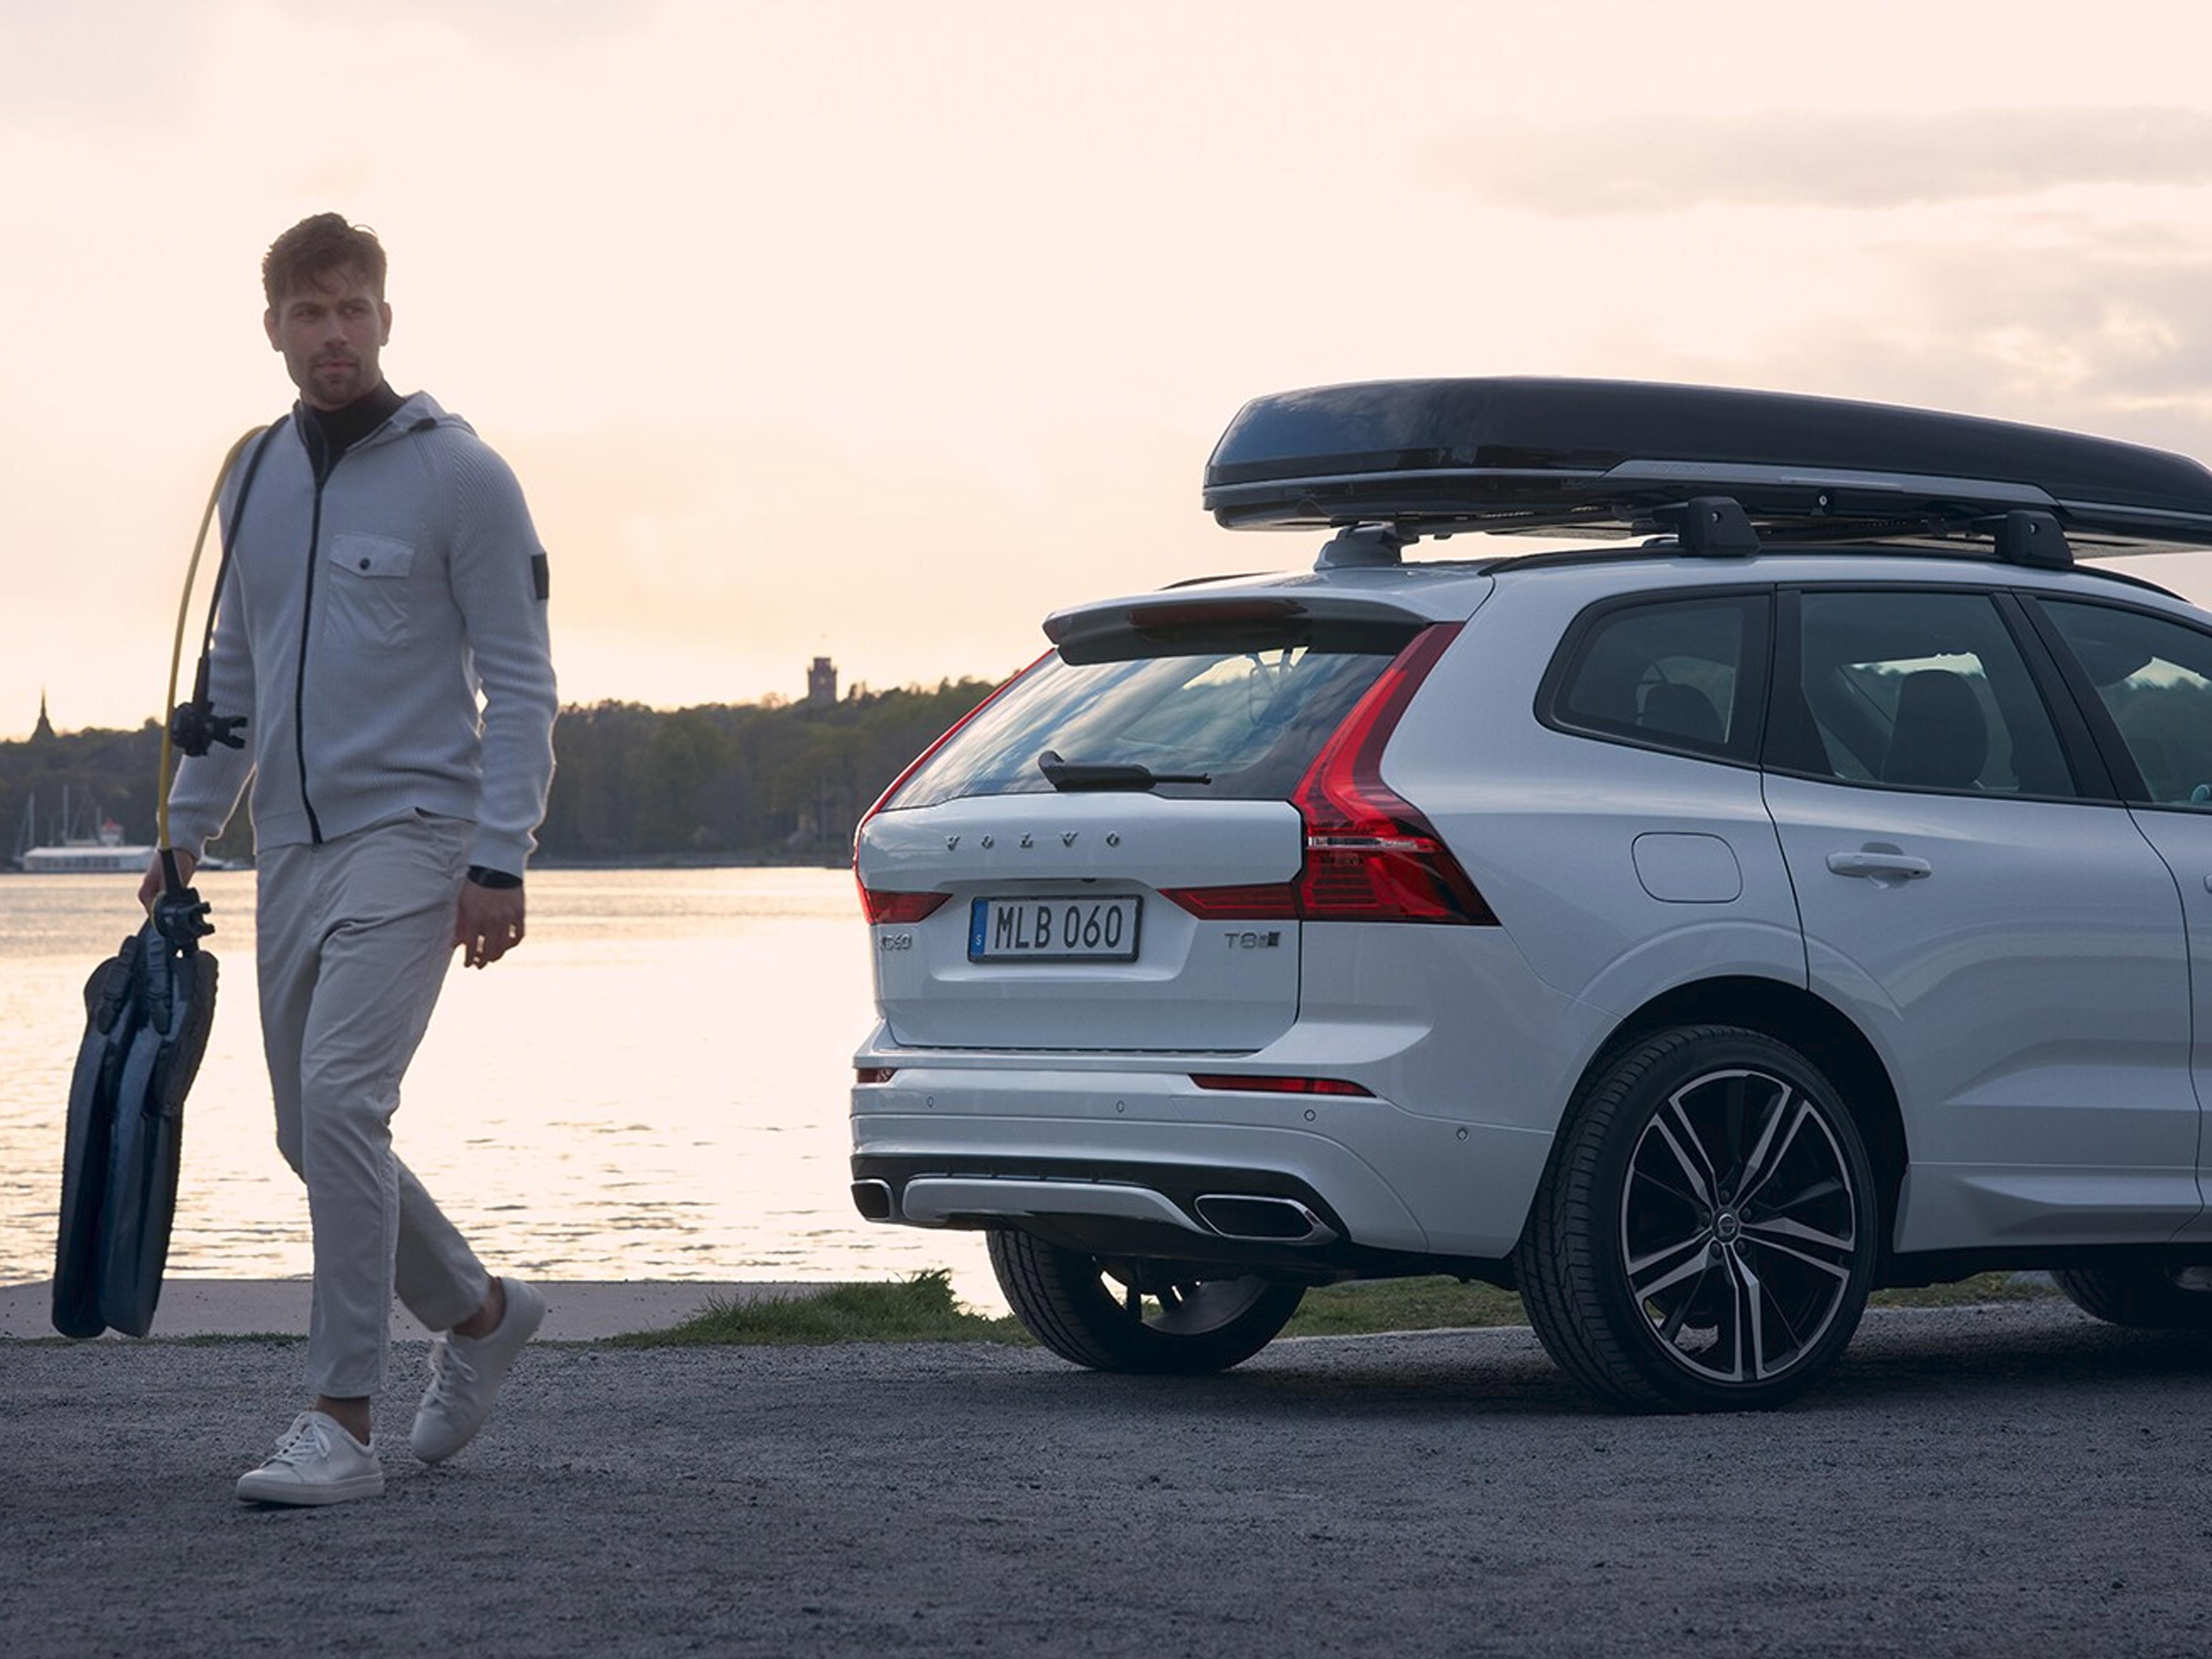 Volvo Zubehör & Lifestyle